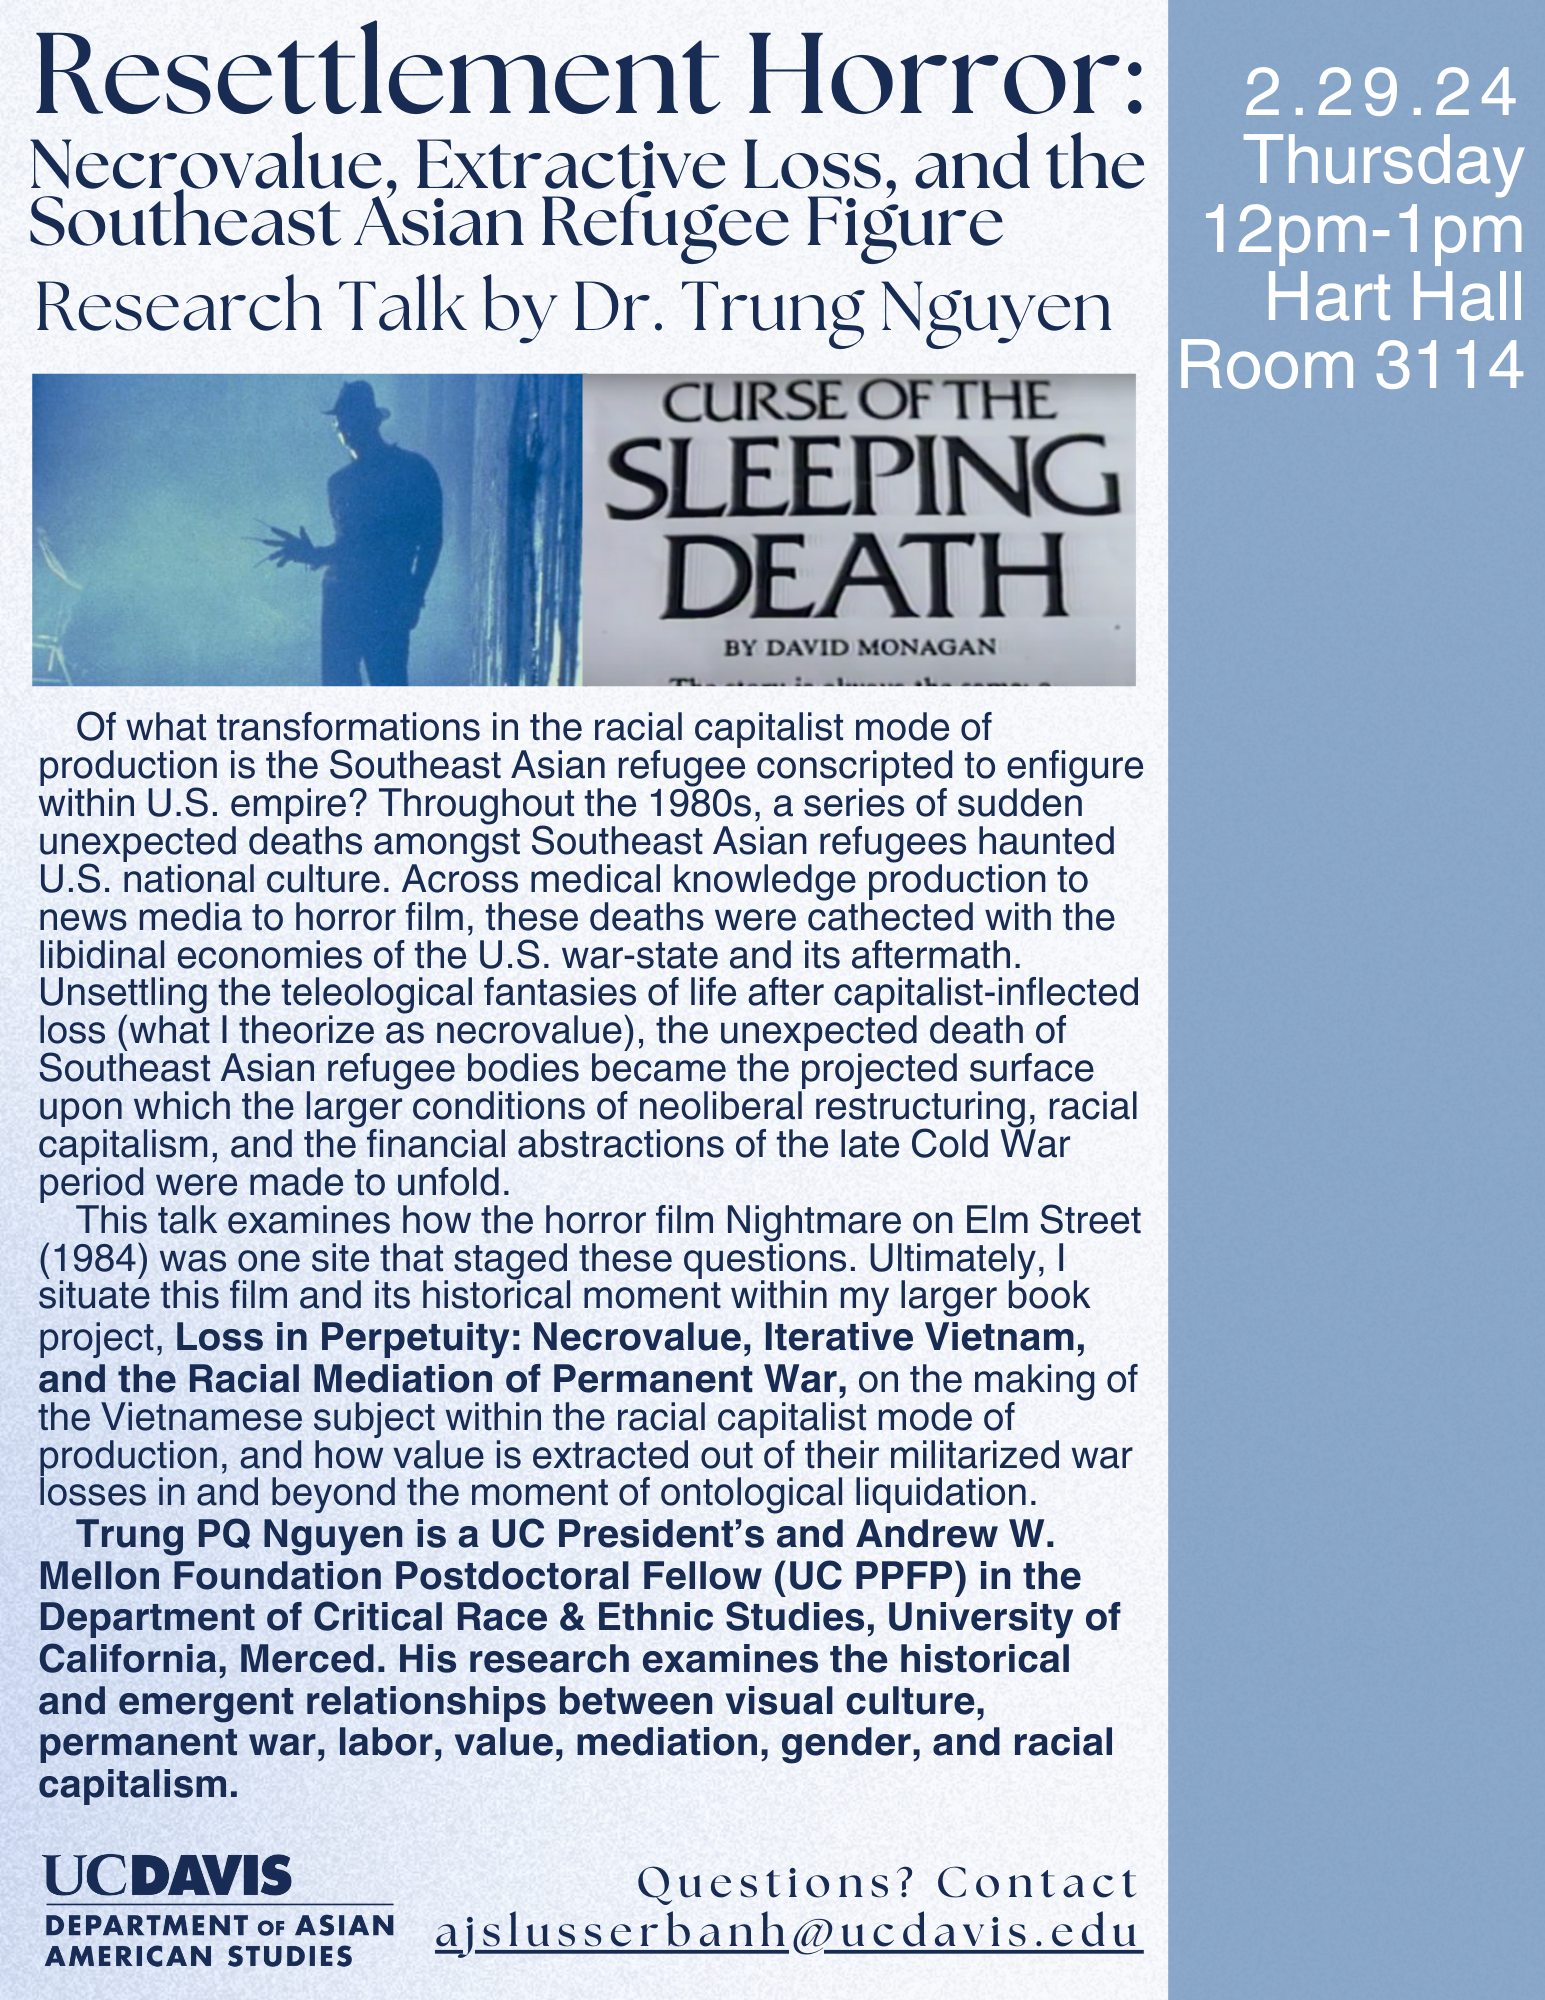 Trung Nguyen Talk Flyer 2/29